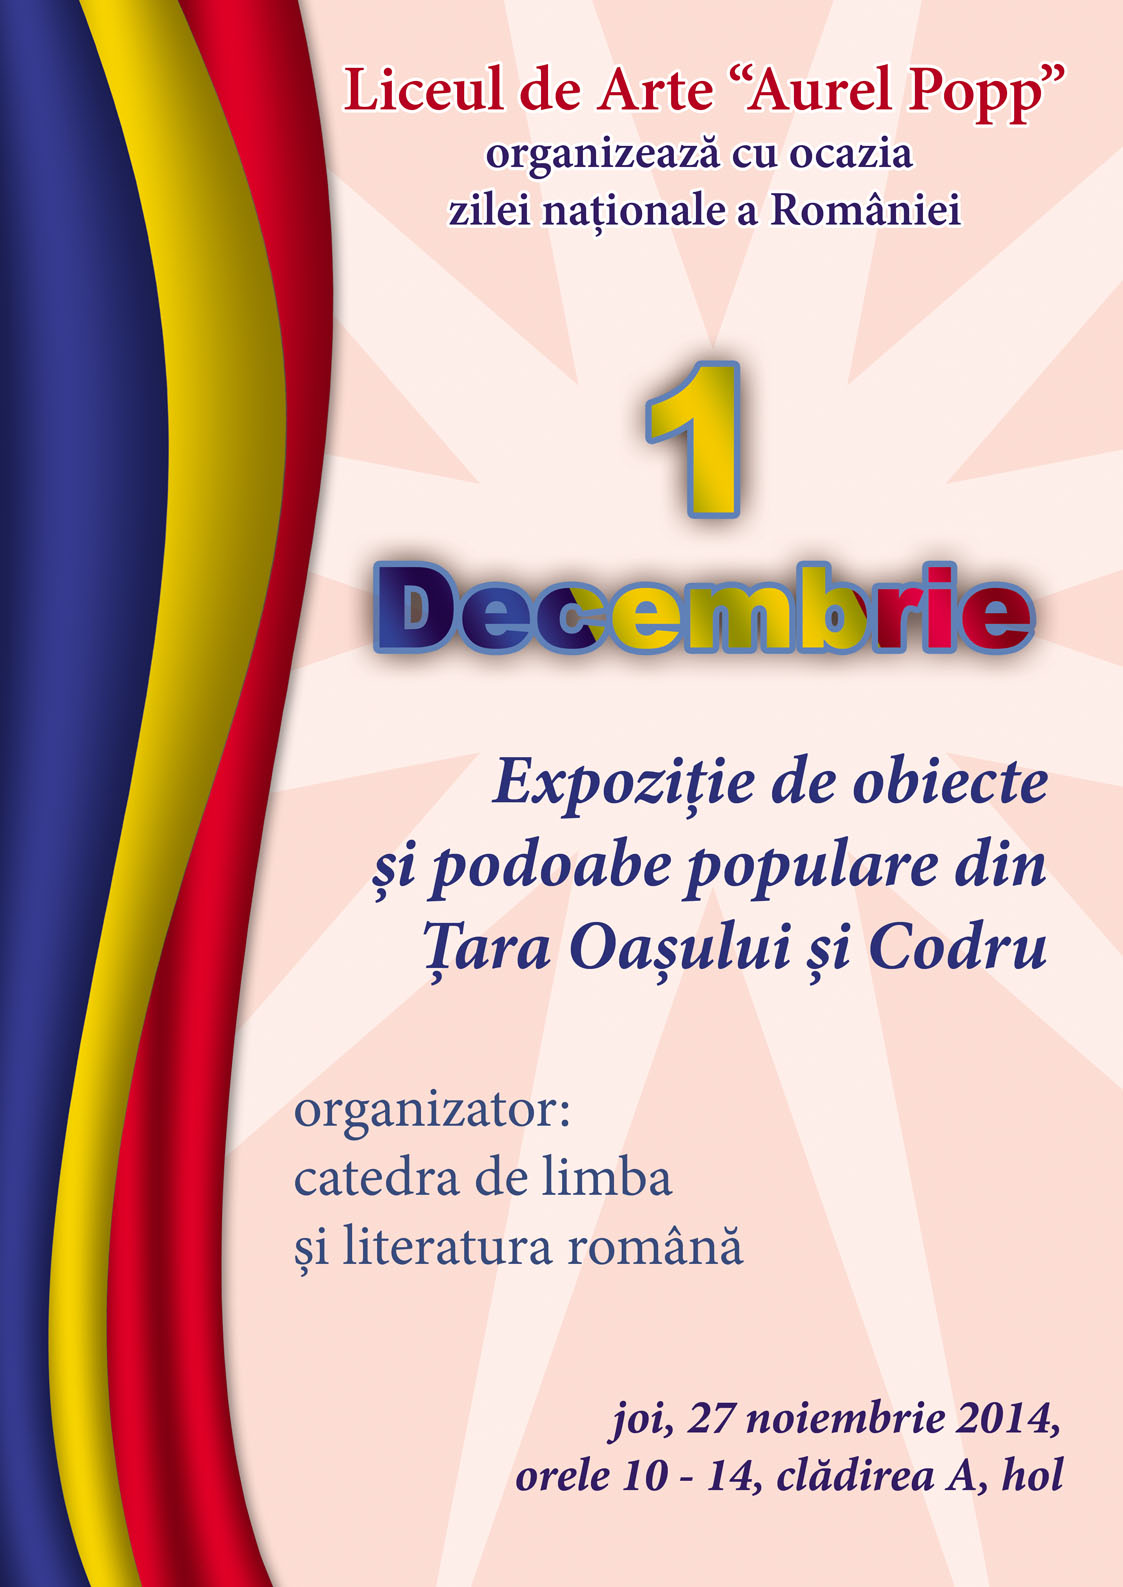 Vineri, 28 noiembrie 2014, de la ora 11, la Filarmonica "Dinu Lipatti" va avea loc un spectacol amplu de muzică și poezie urmat de o expoziție pregatita de elevii și profesorii de la arte plastice în holul instituției de cultură